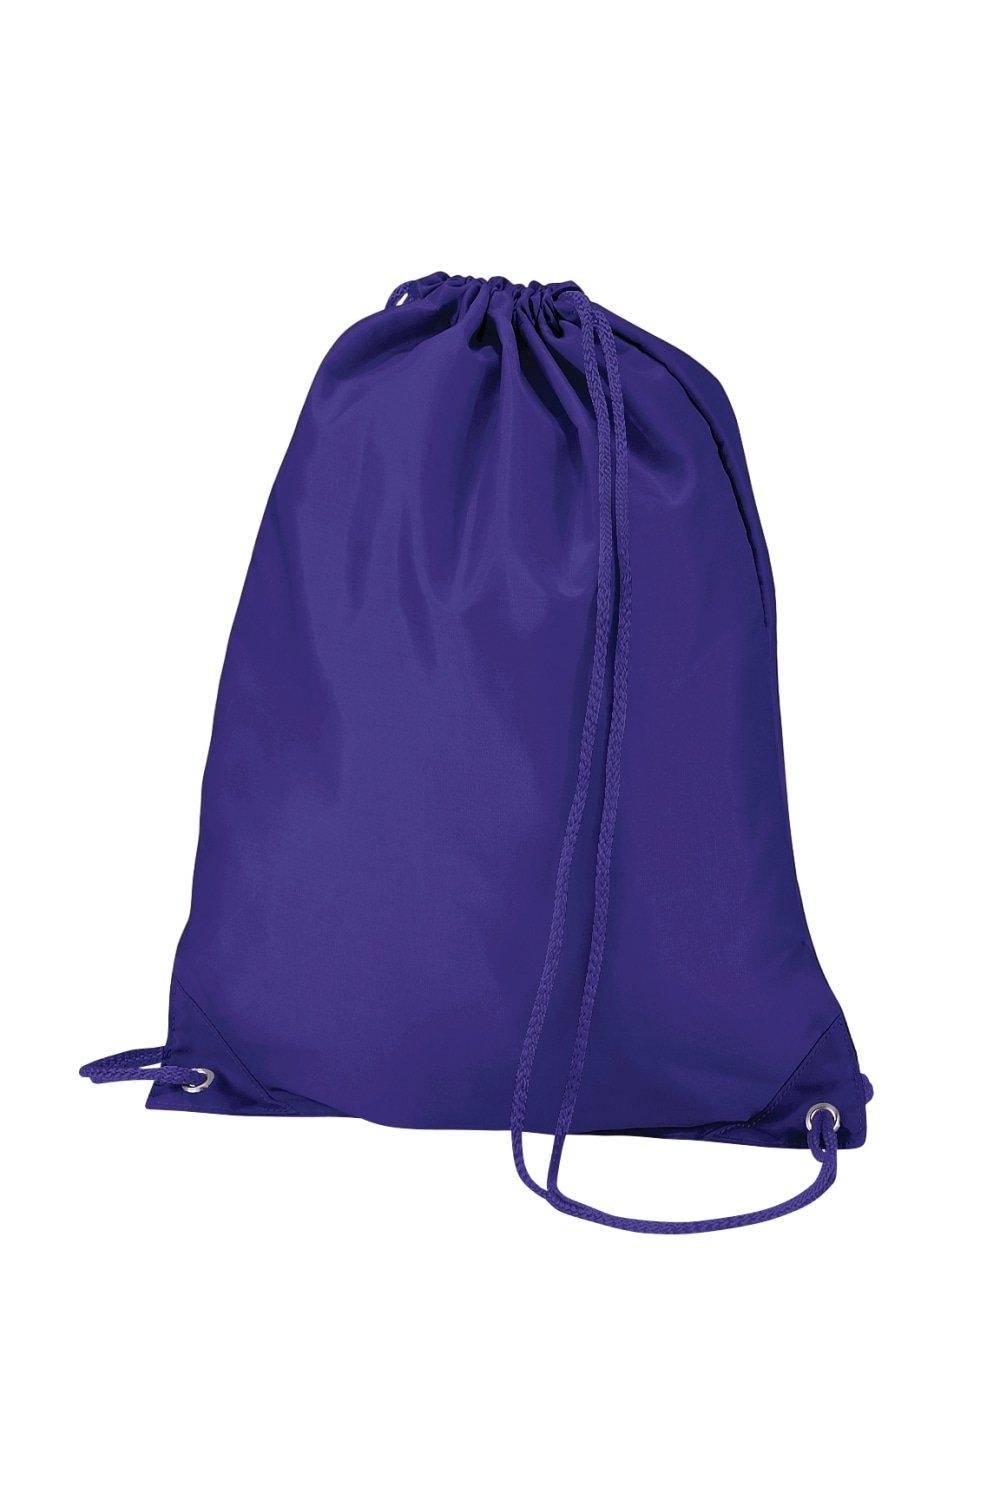 Сумка для переноски через плечо Gymsac - 7 литров (2 шт. в упаковке) Quadra, фиолетовый фото